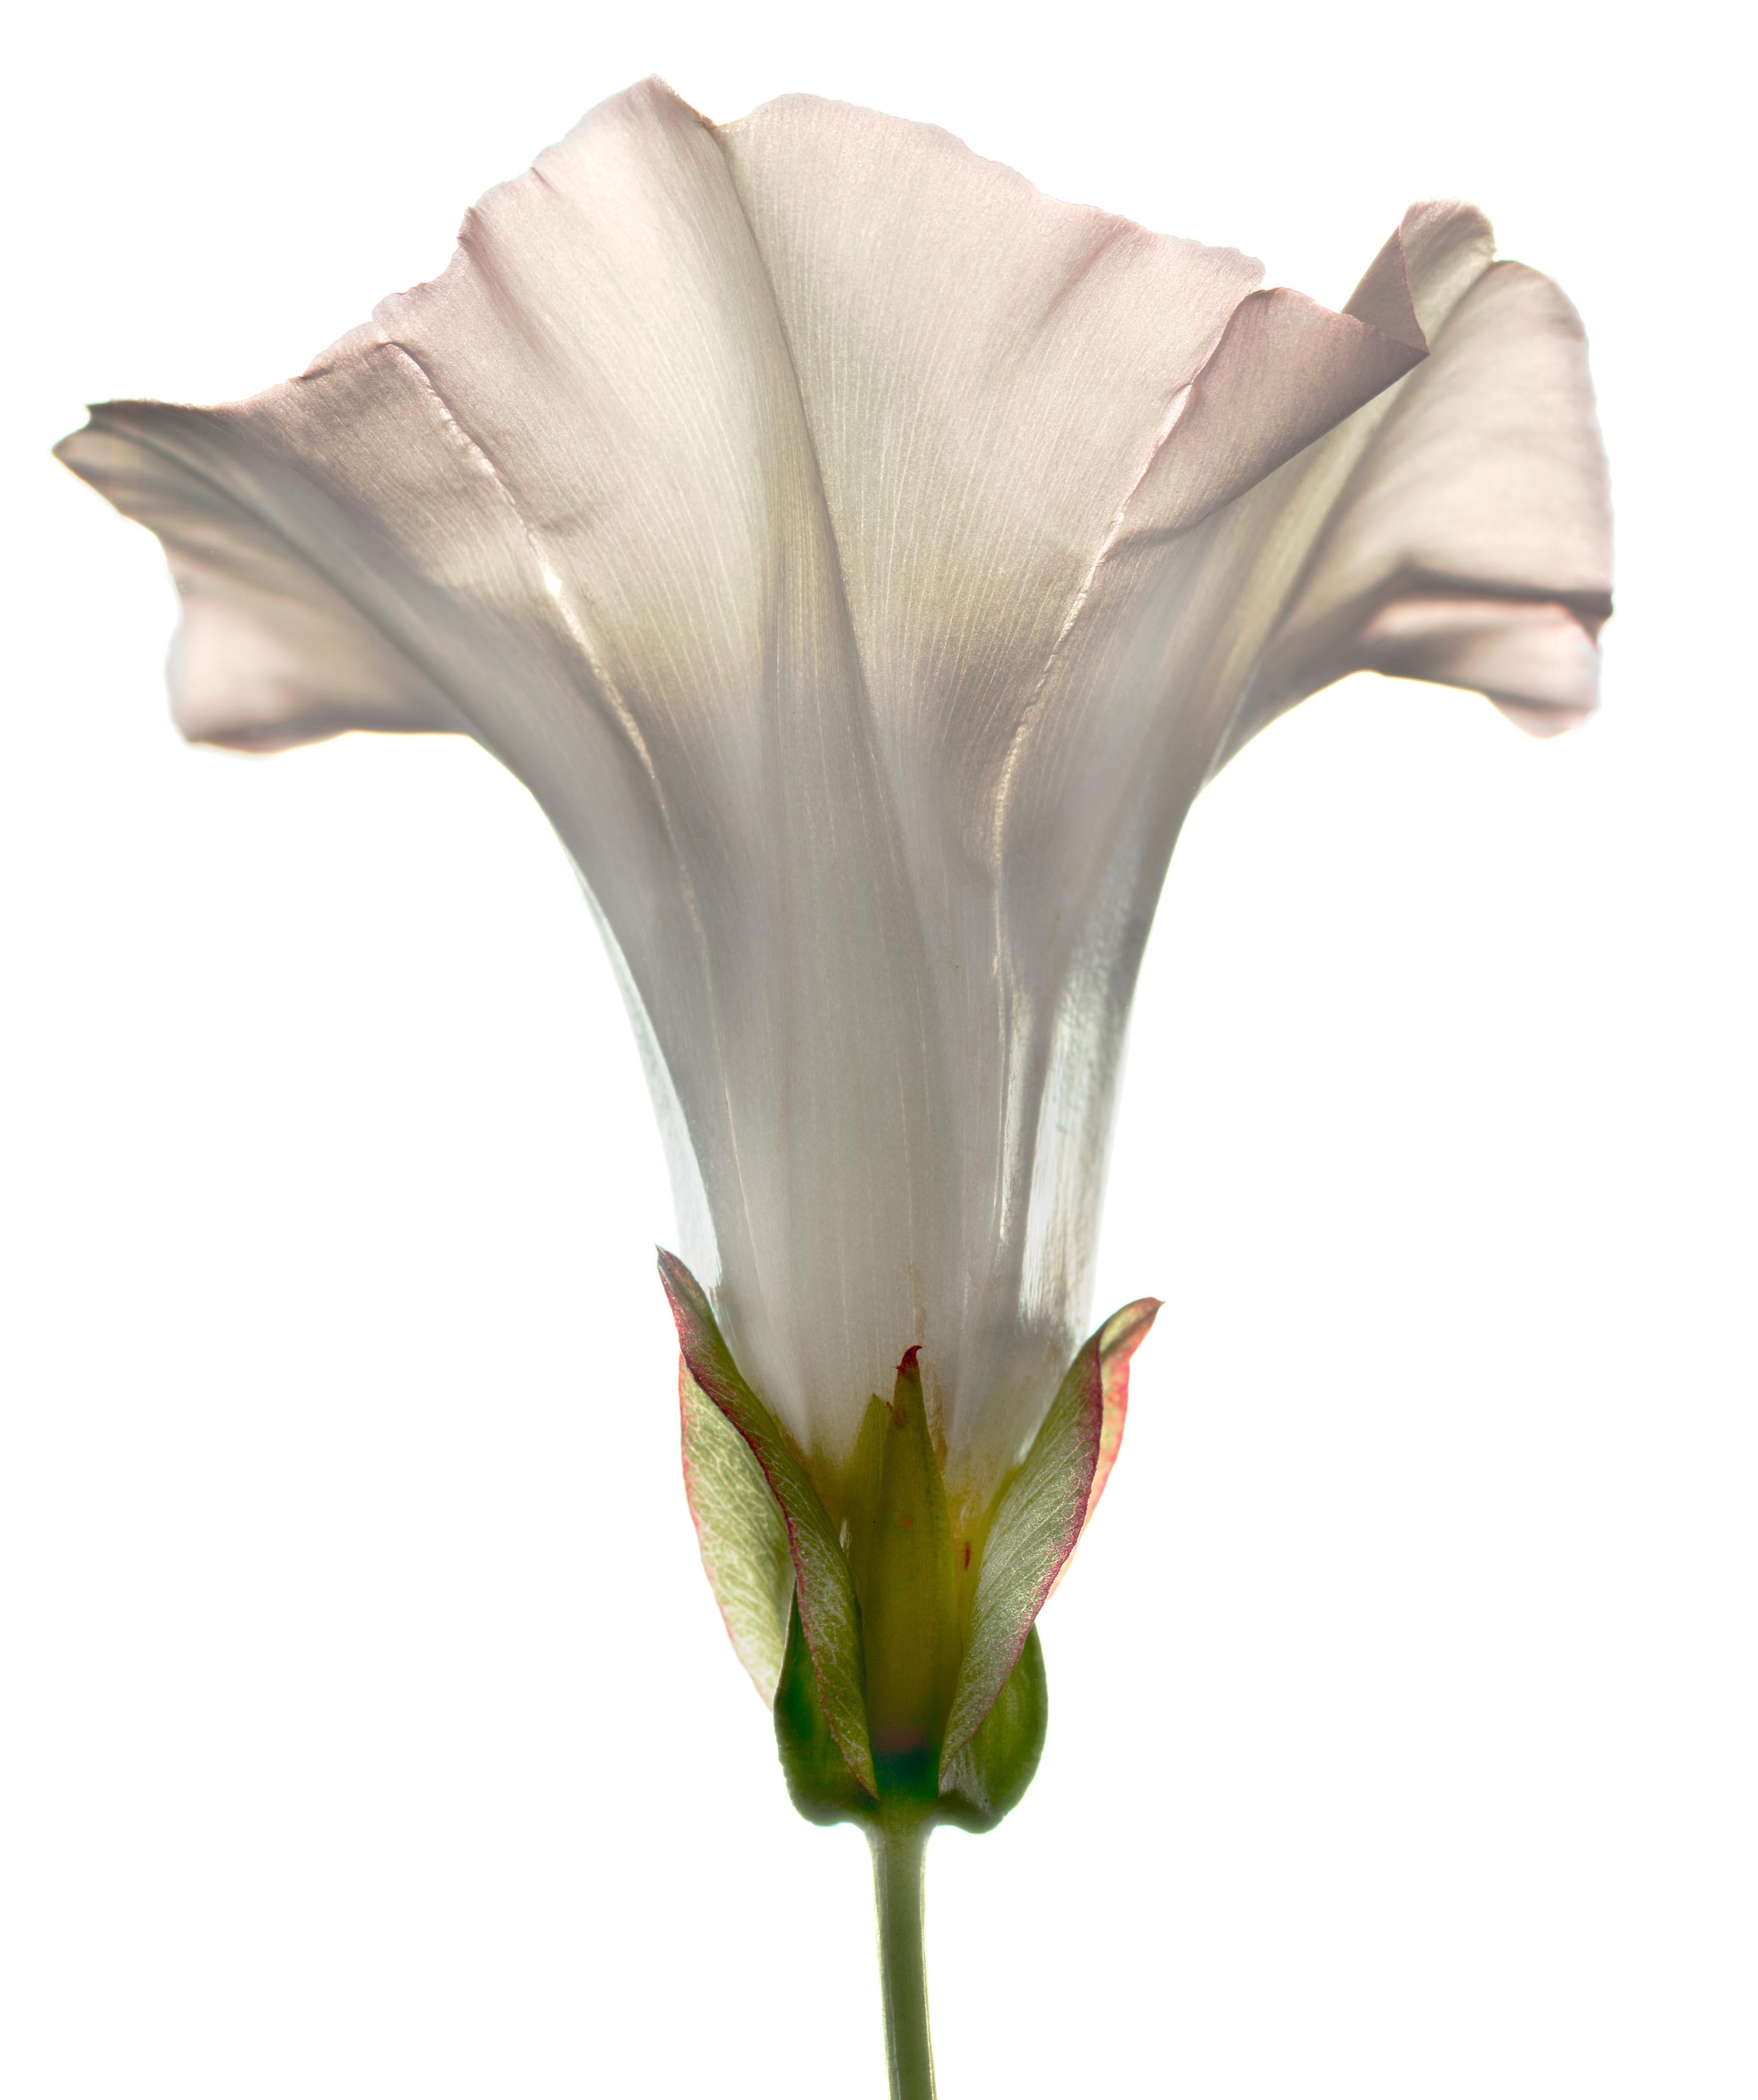 Unbenannte Blume # 112
Hahnemuhle Photo Rag Matte Papier mit Epson Tinte in Archivierungsqualität
Auflage von 25 Stück
Verfügbare Größen:
11" x 14"
20" x 24"
30" x 30"
30" x 40"
40" x 40"
48" x 48"
48" x 60"
60" x 60"

Seit 1997 benutze ich einen